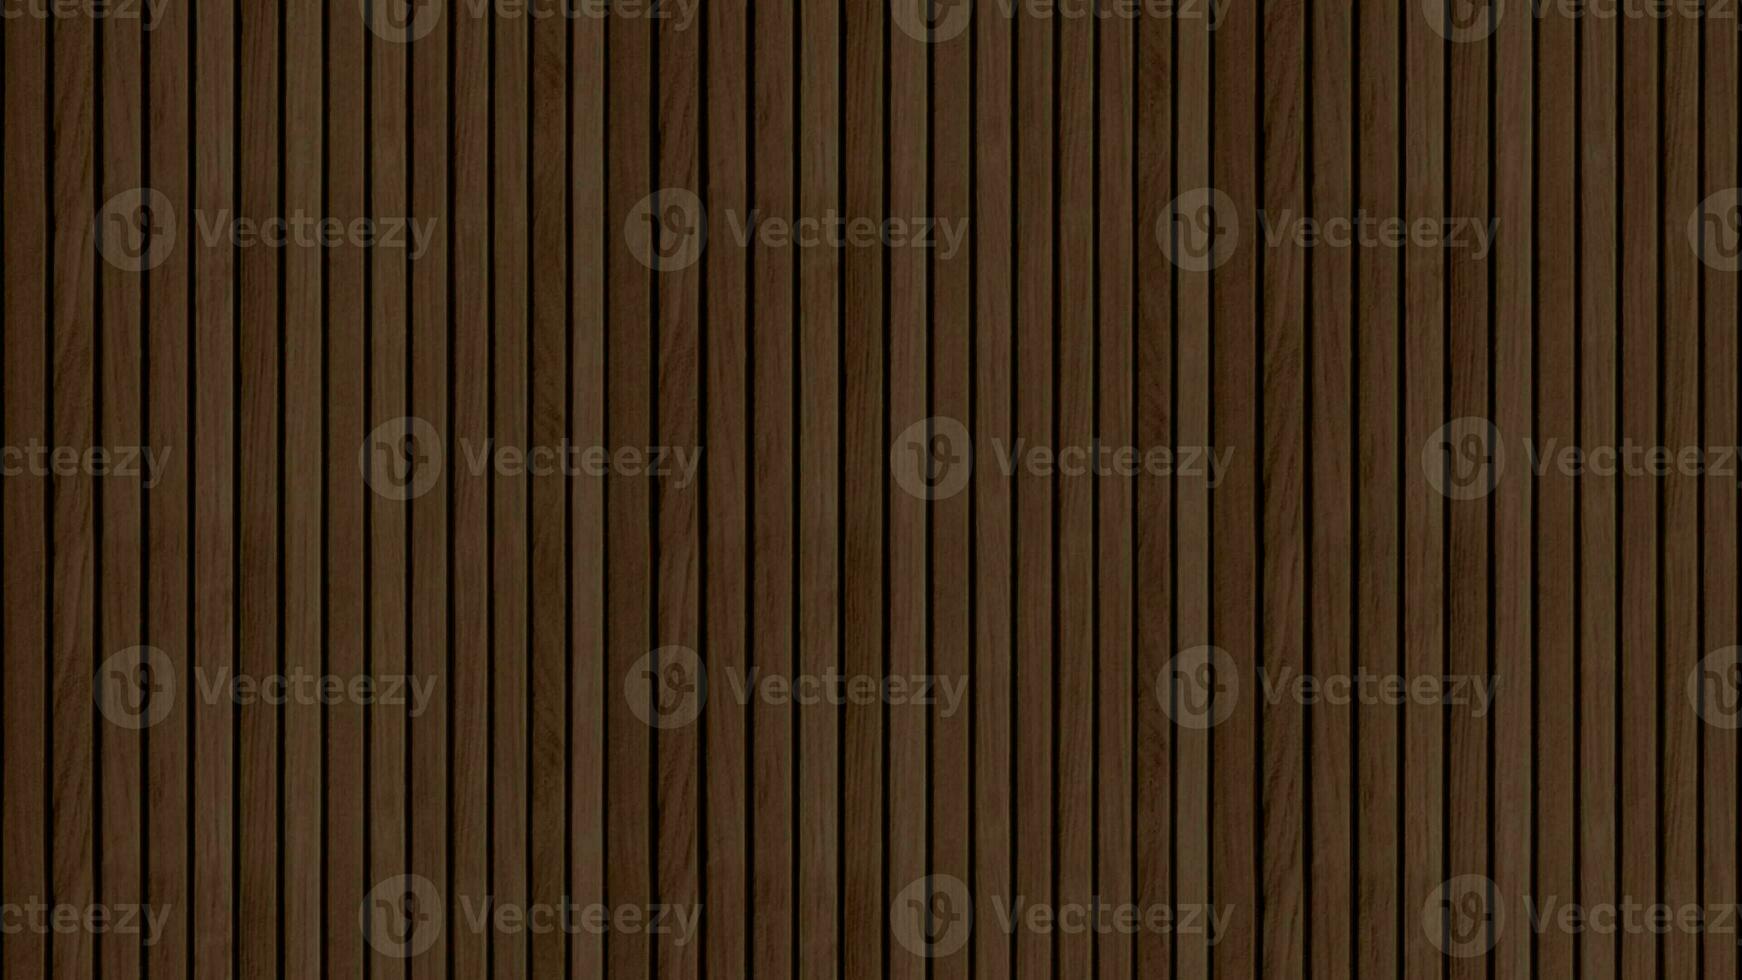 Deck Holz textrue braun zum Hintergrund oder Startseite foto